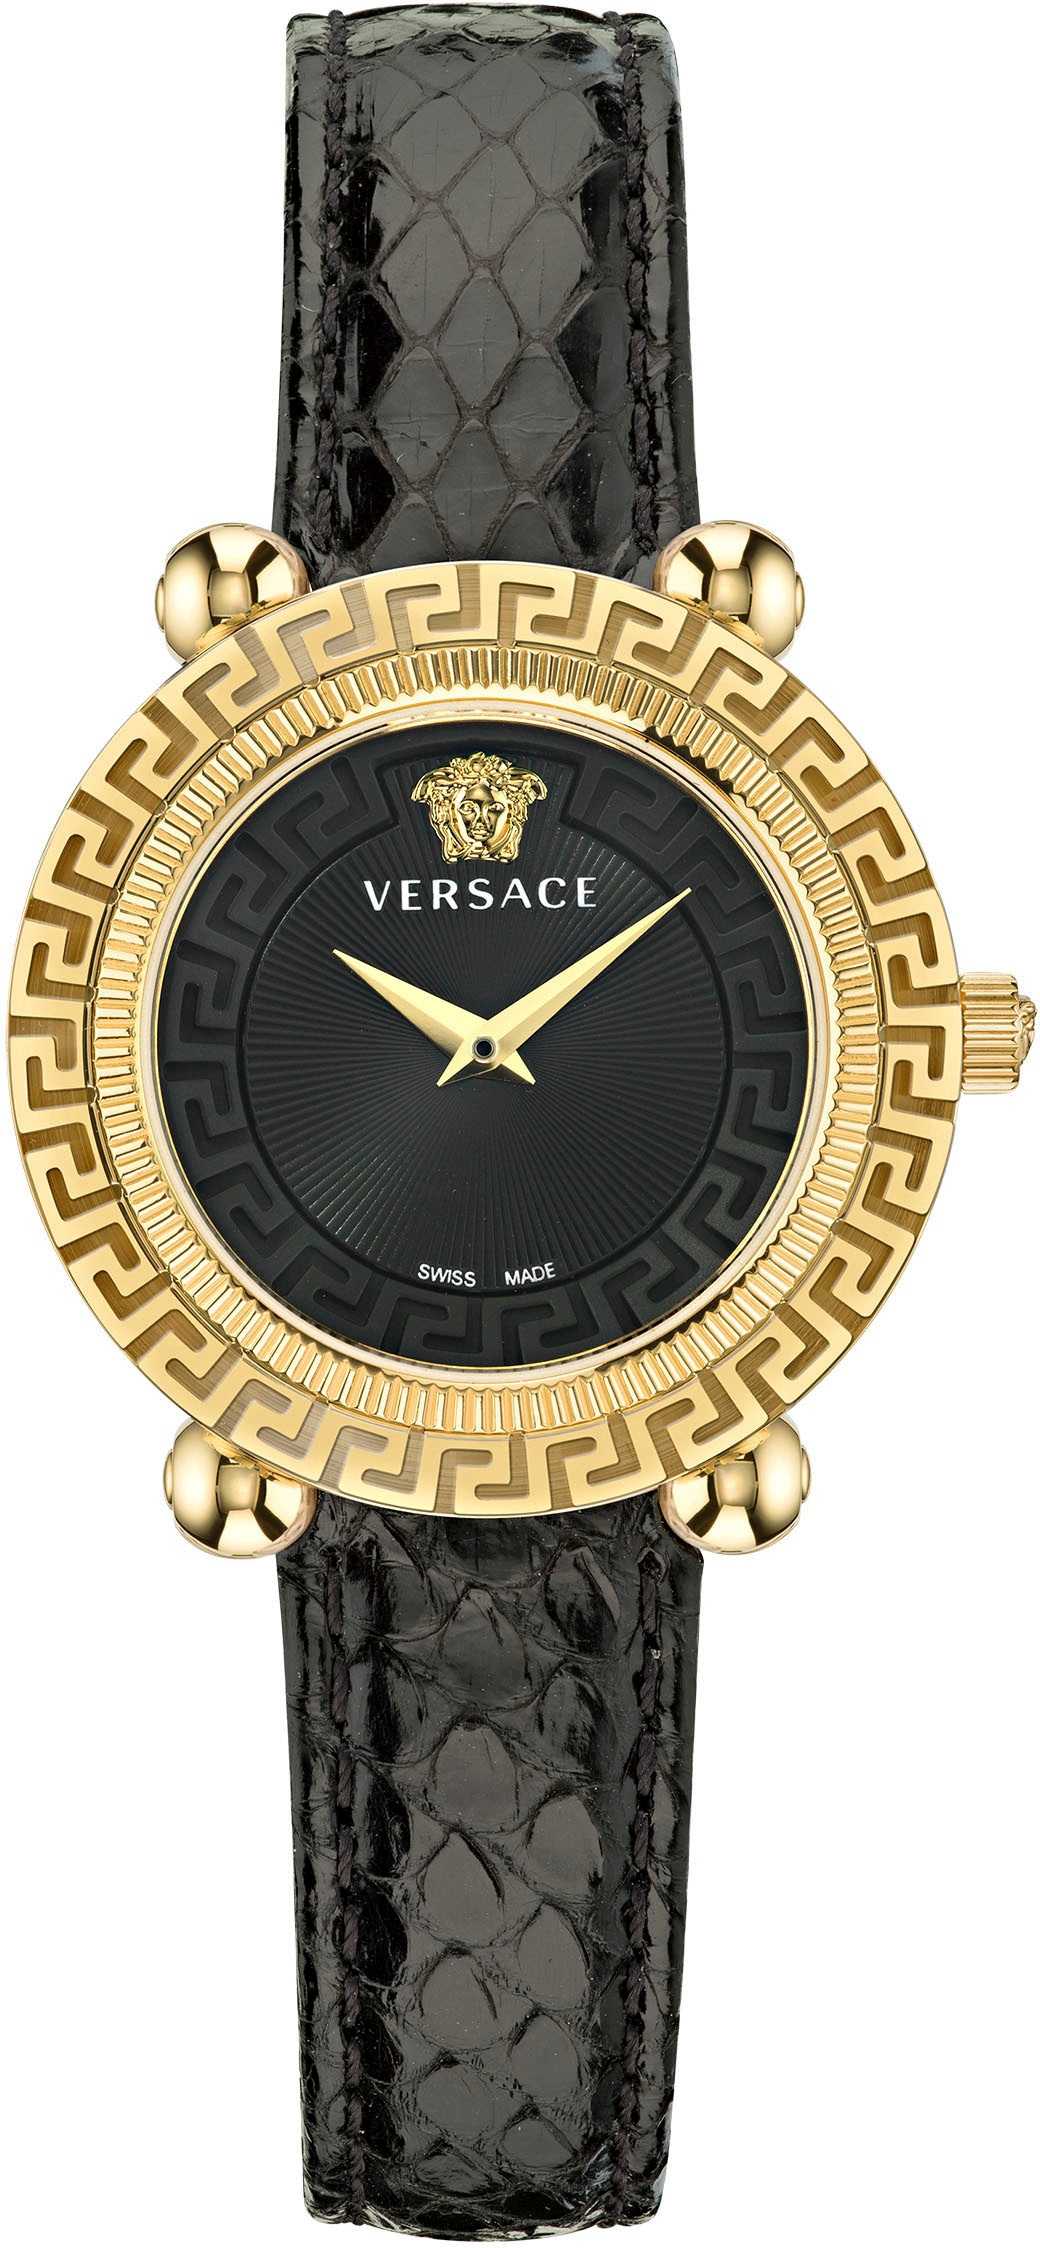 Versace I\'m online » schwarz Uhr kaufen walking